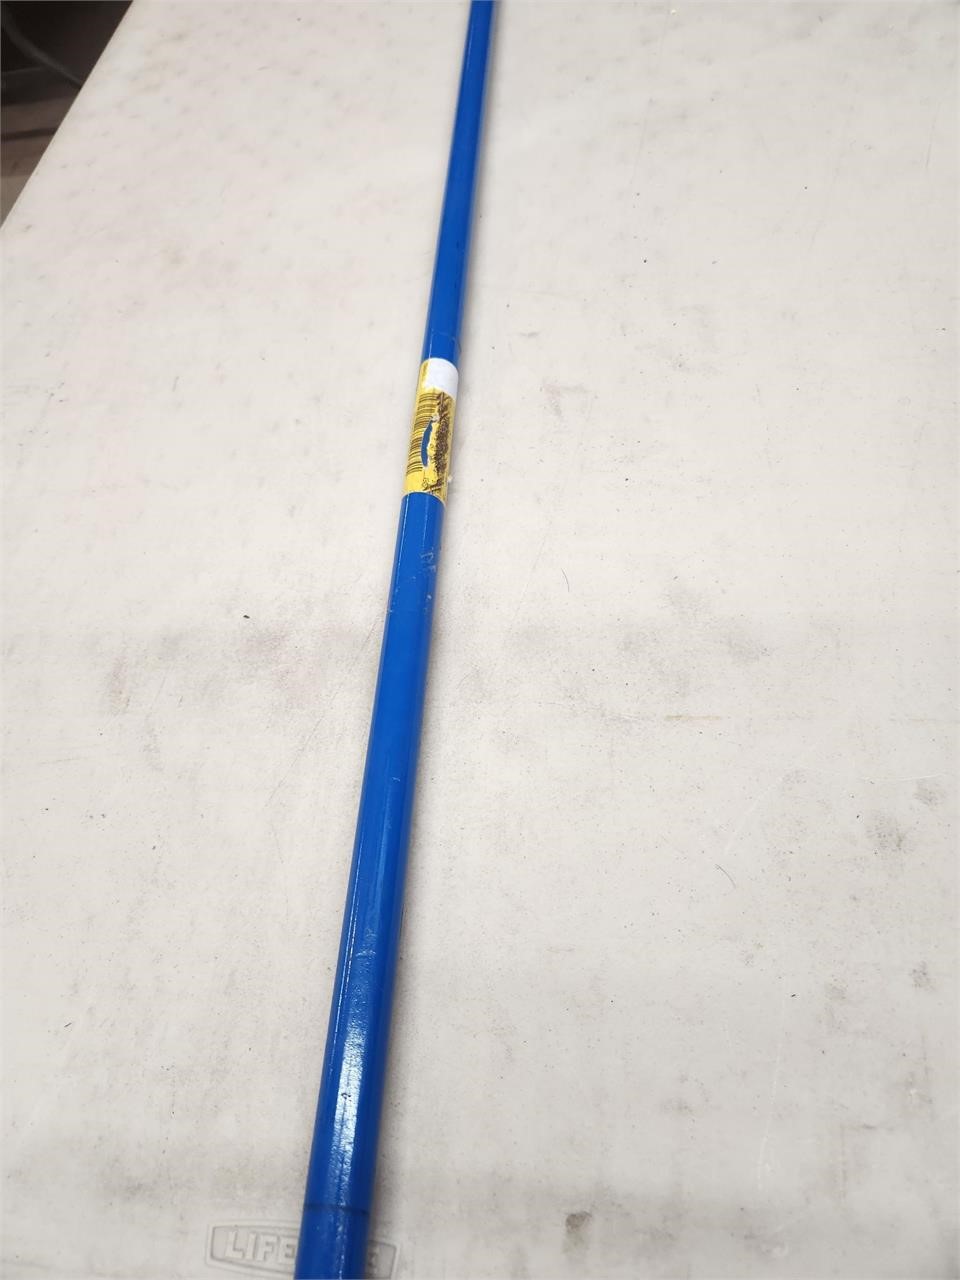 BWK636 - Fiberglass Broom Handle 59"L x 1"W